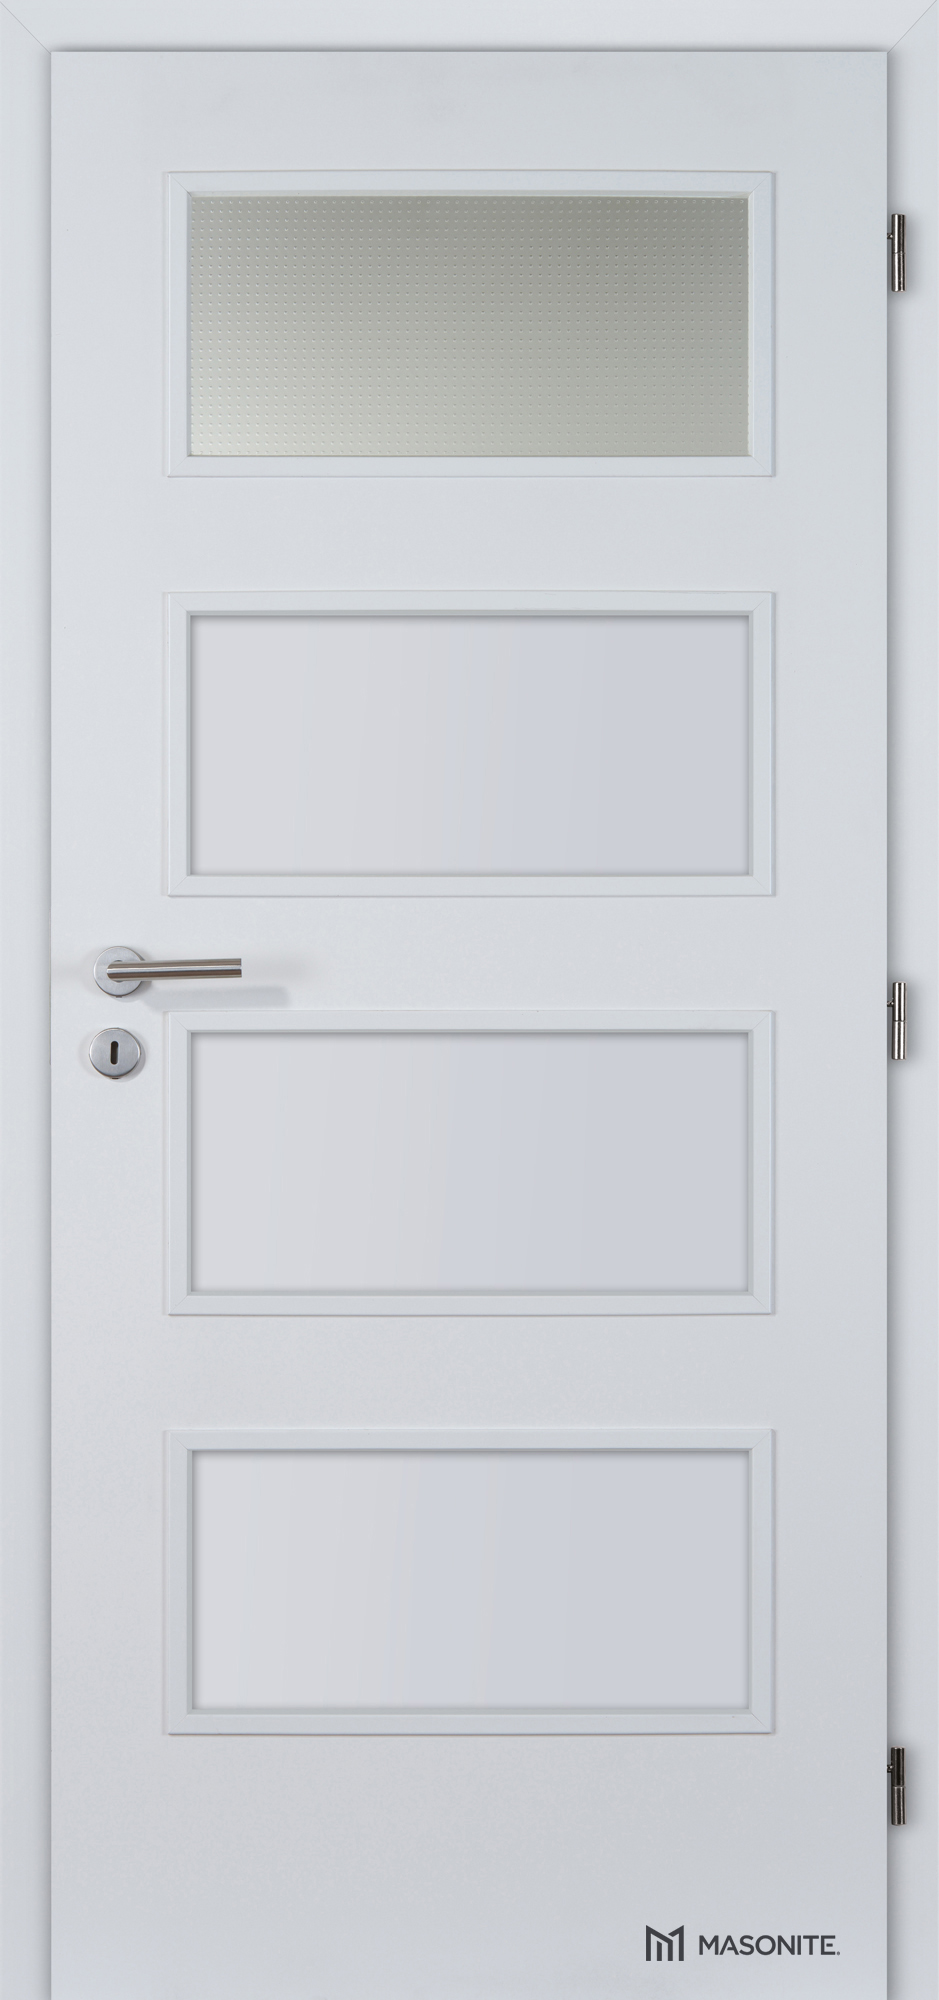 Dveře DTD DOMINANT 1x piskované sklo CPL bílá